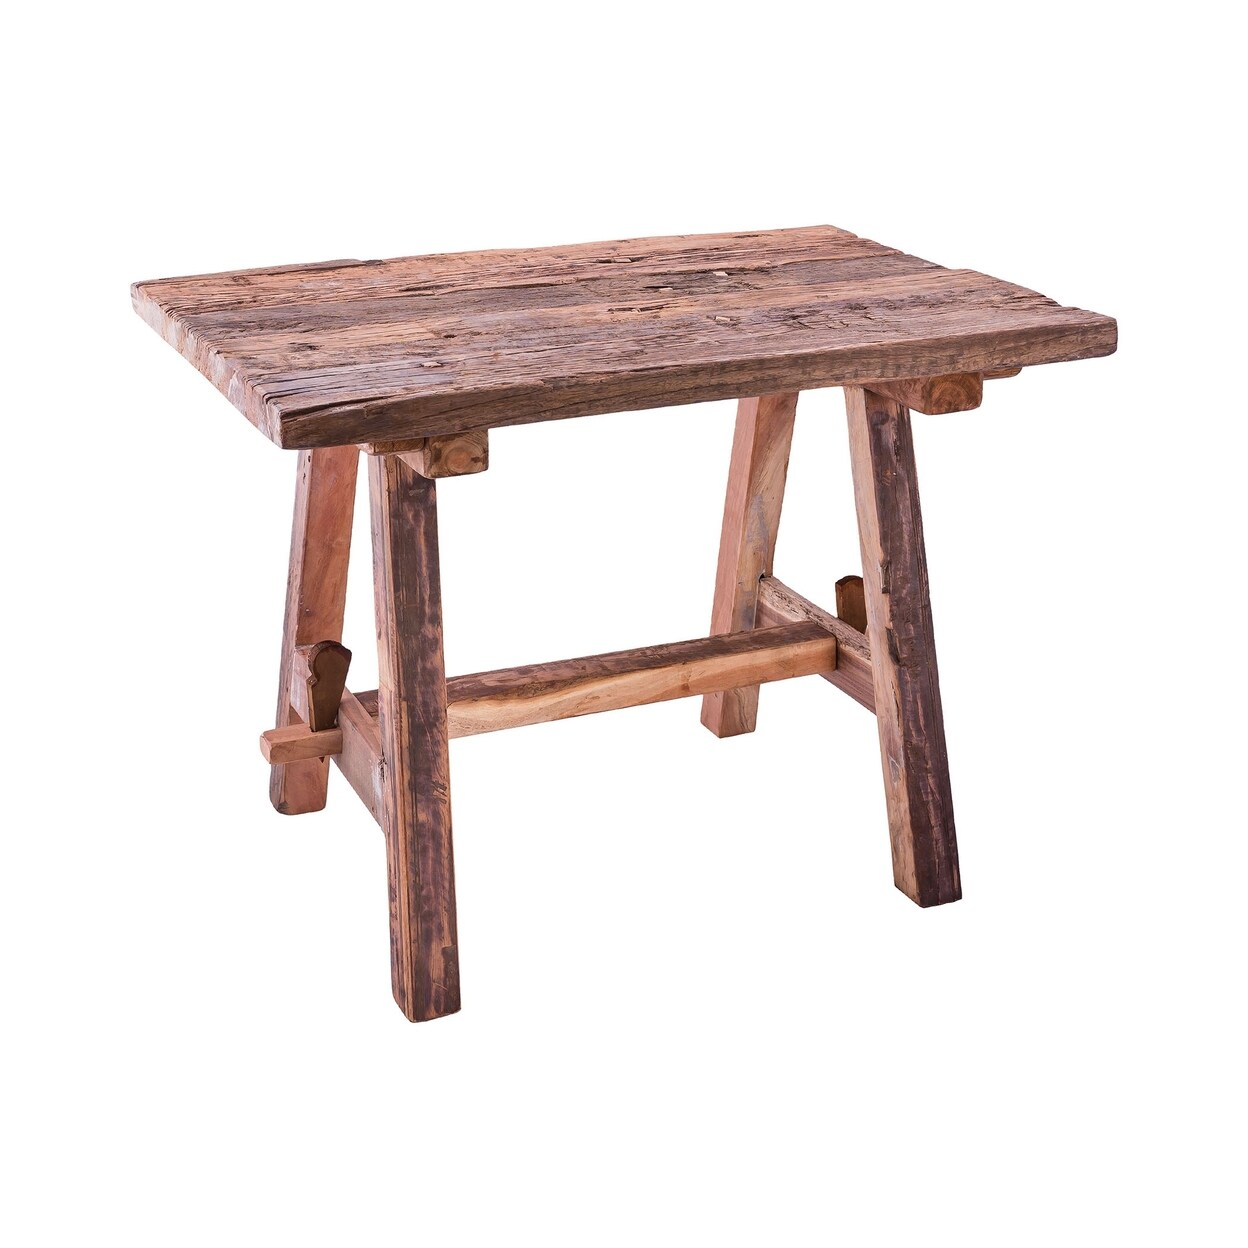 Elk Studio Rustic Table with Bench